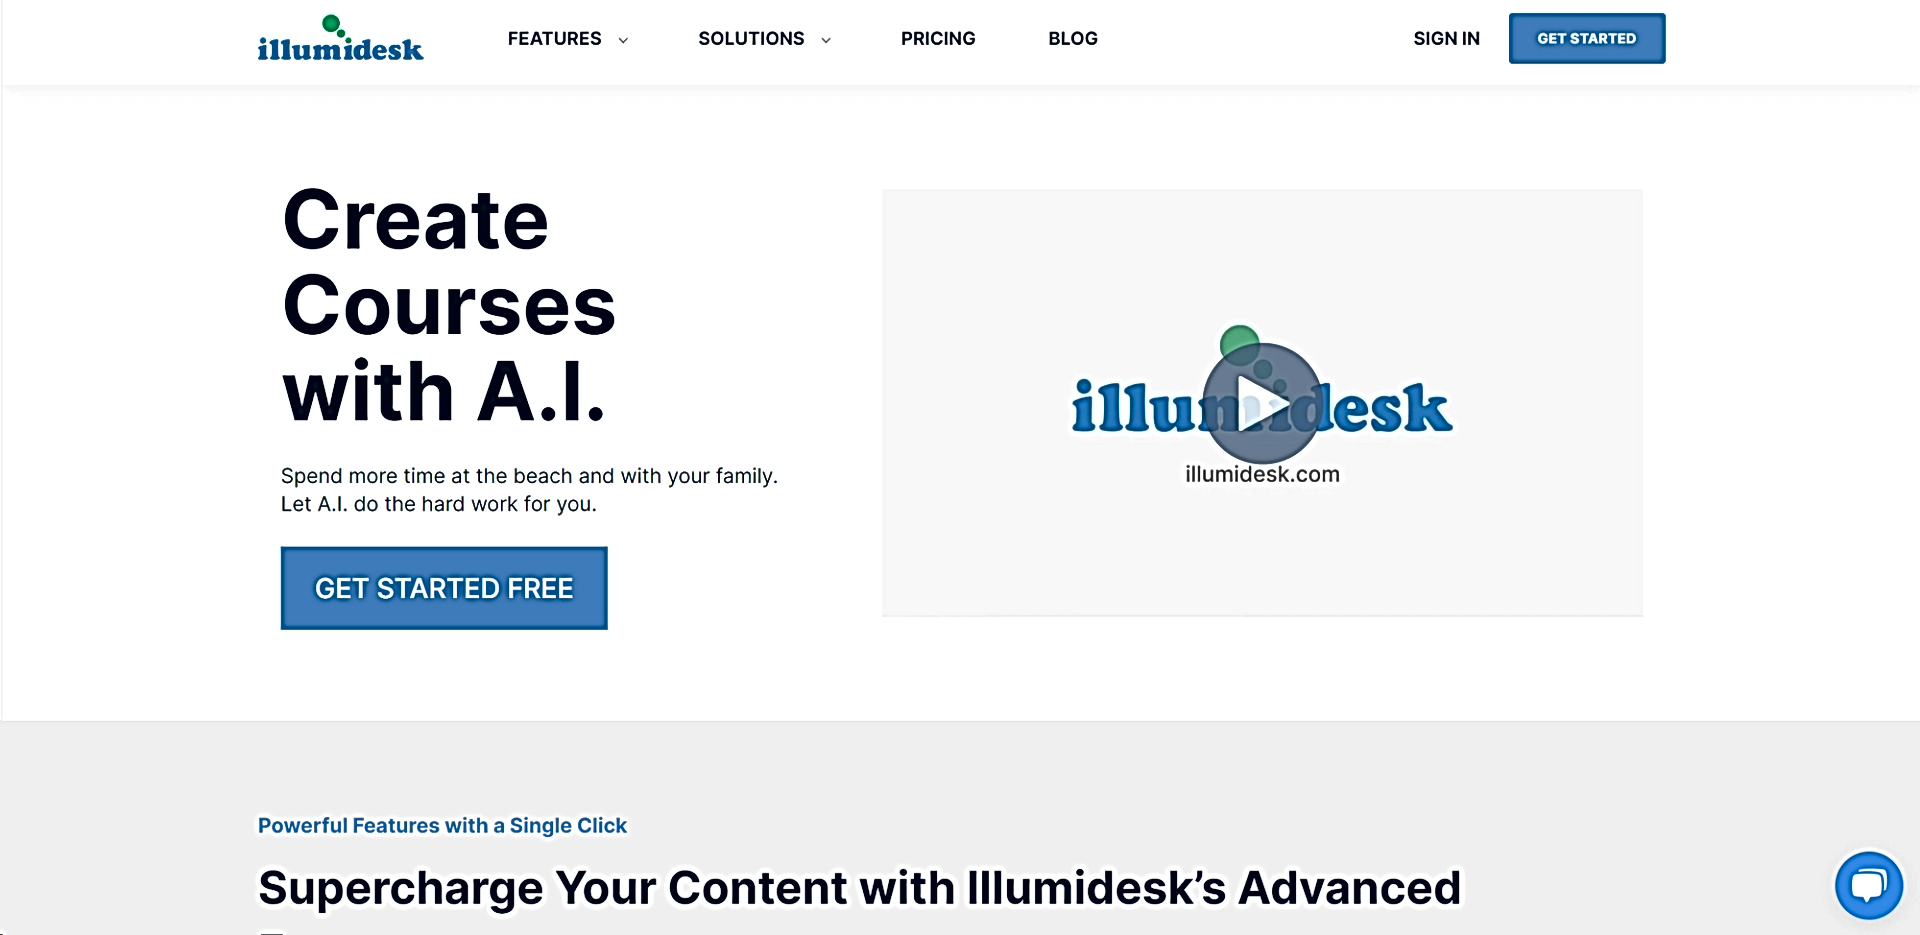 IllumiDesk featured